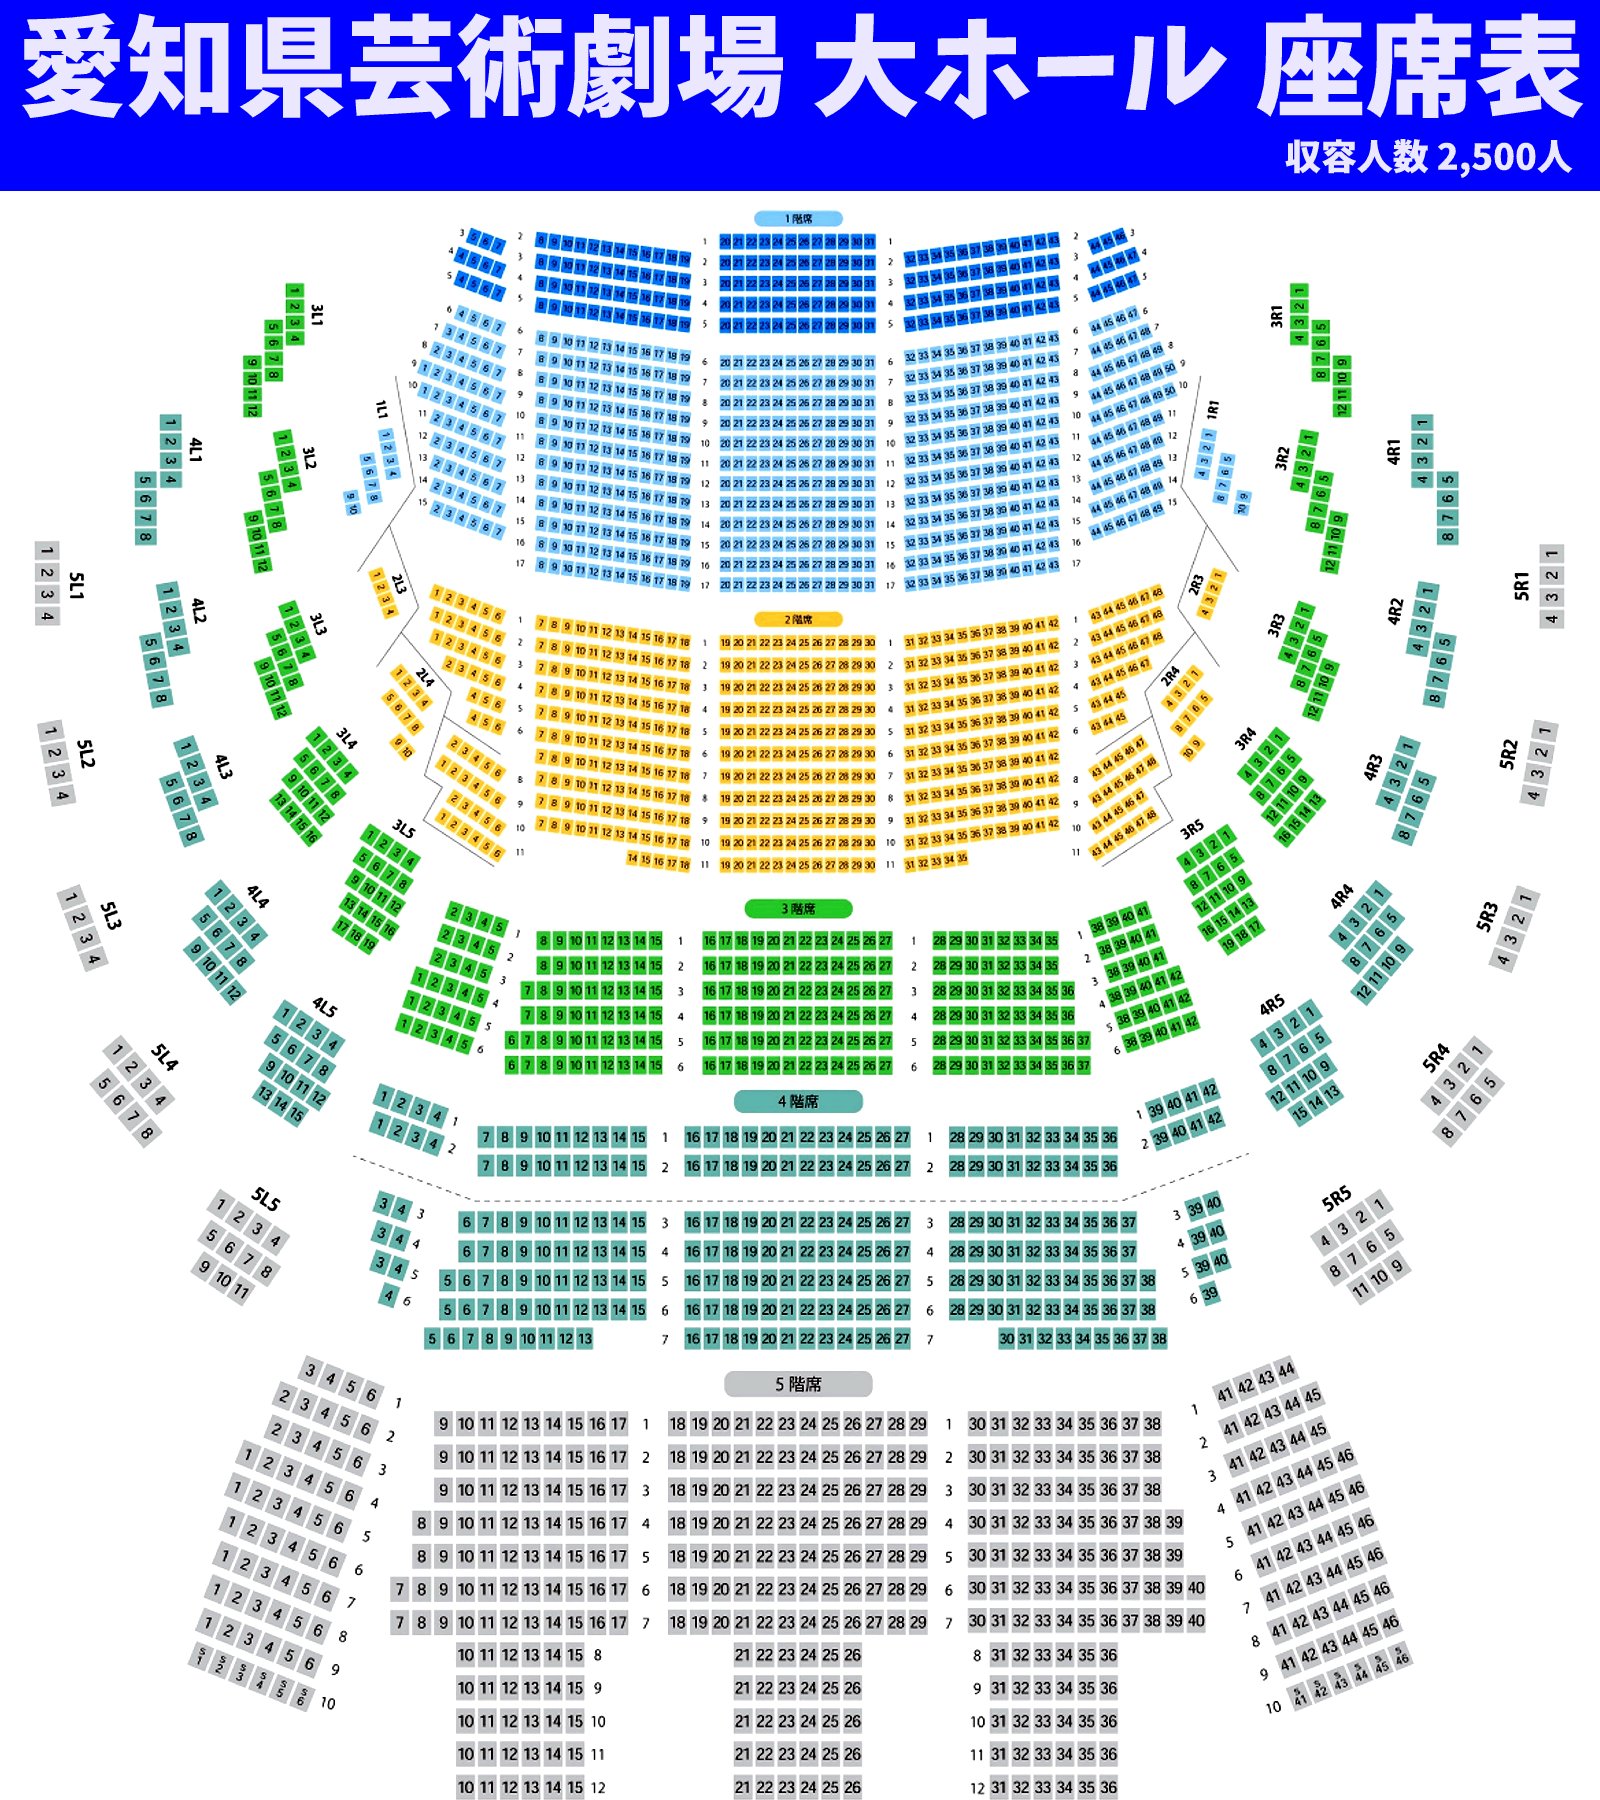 アムネ on Twitter: "℃-uteが6/4に使う『愛知県芸術劇場大ホール』 座席表を見れば分かりますが、4階と5階の席数が、普段℃-